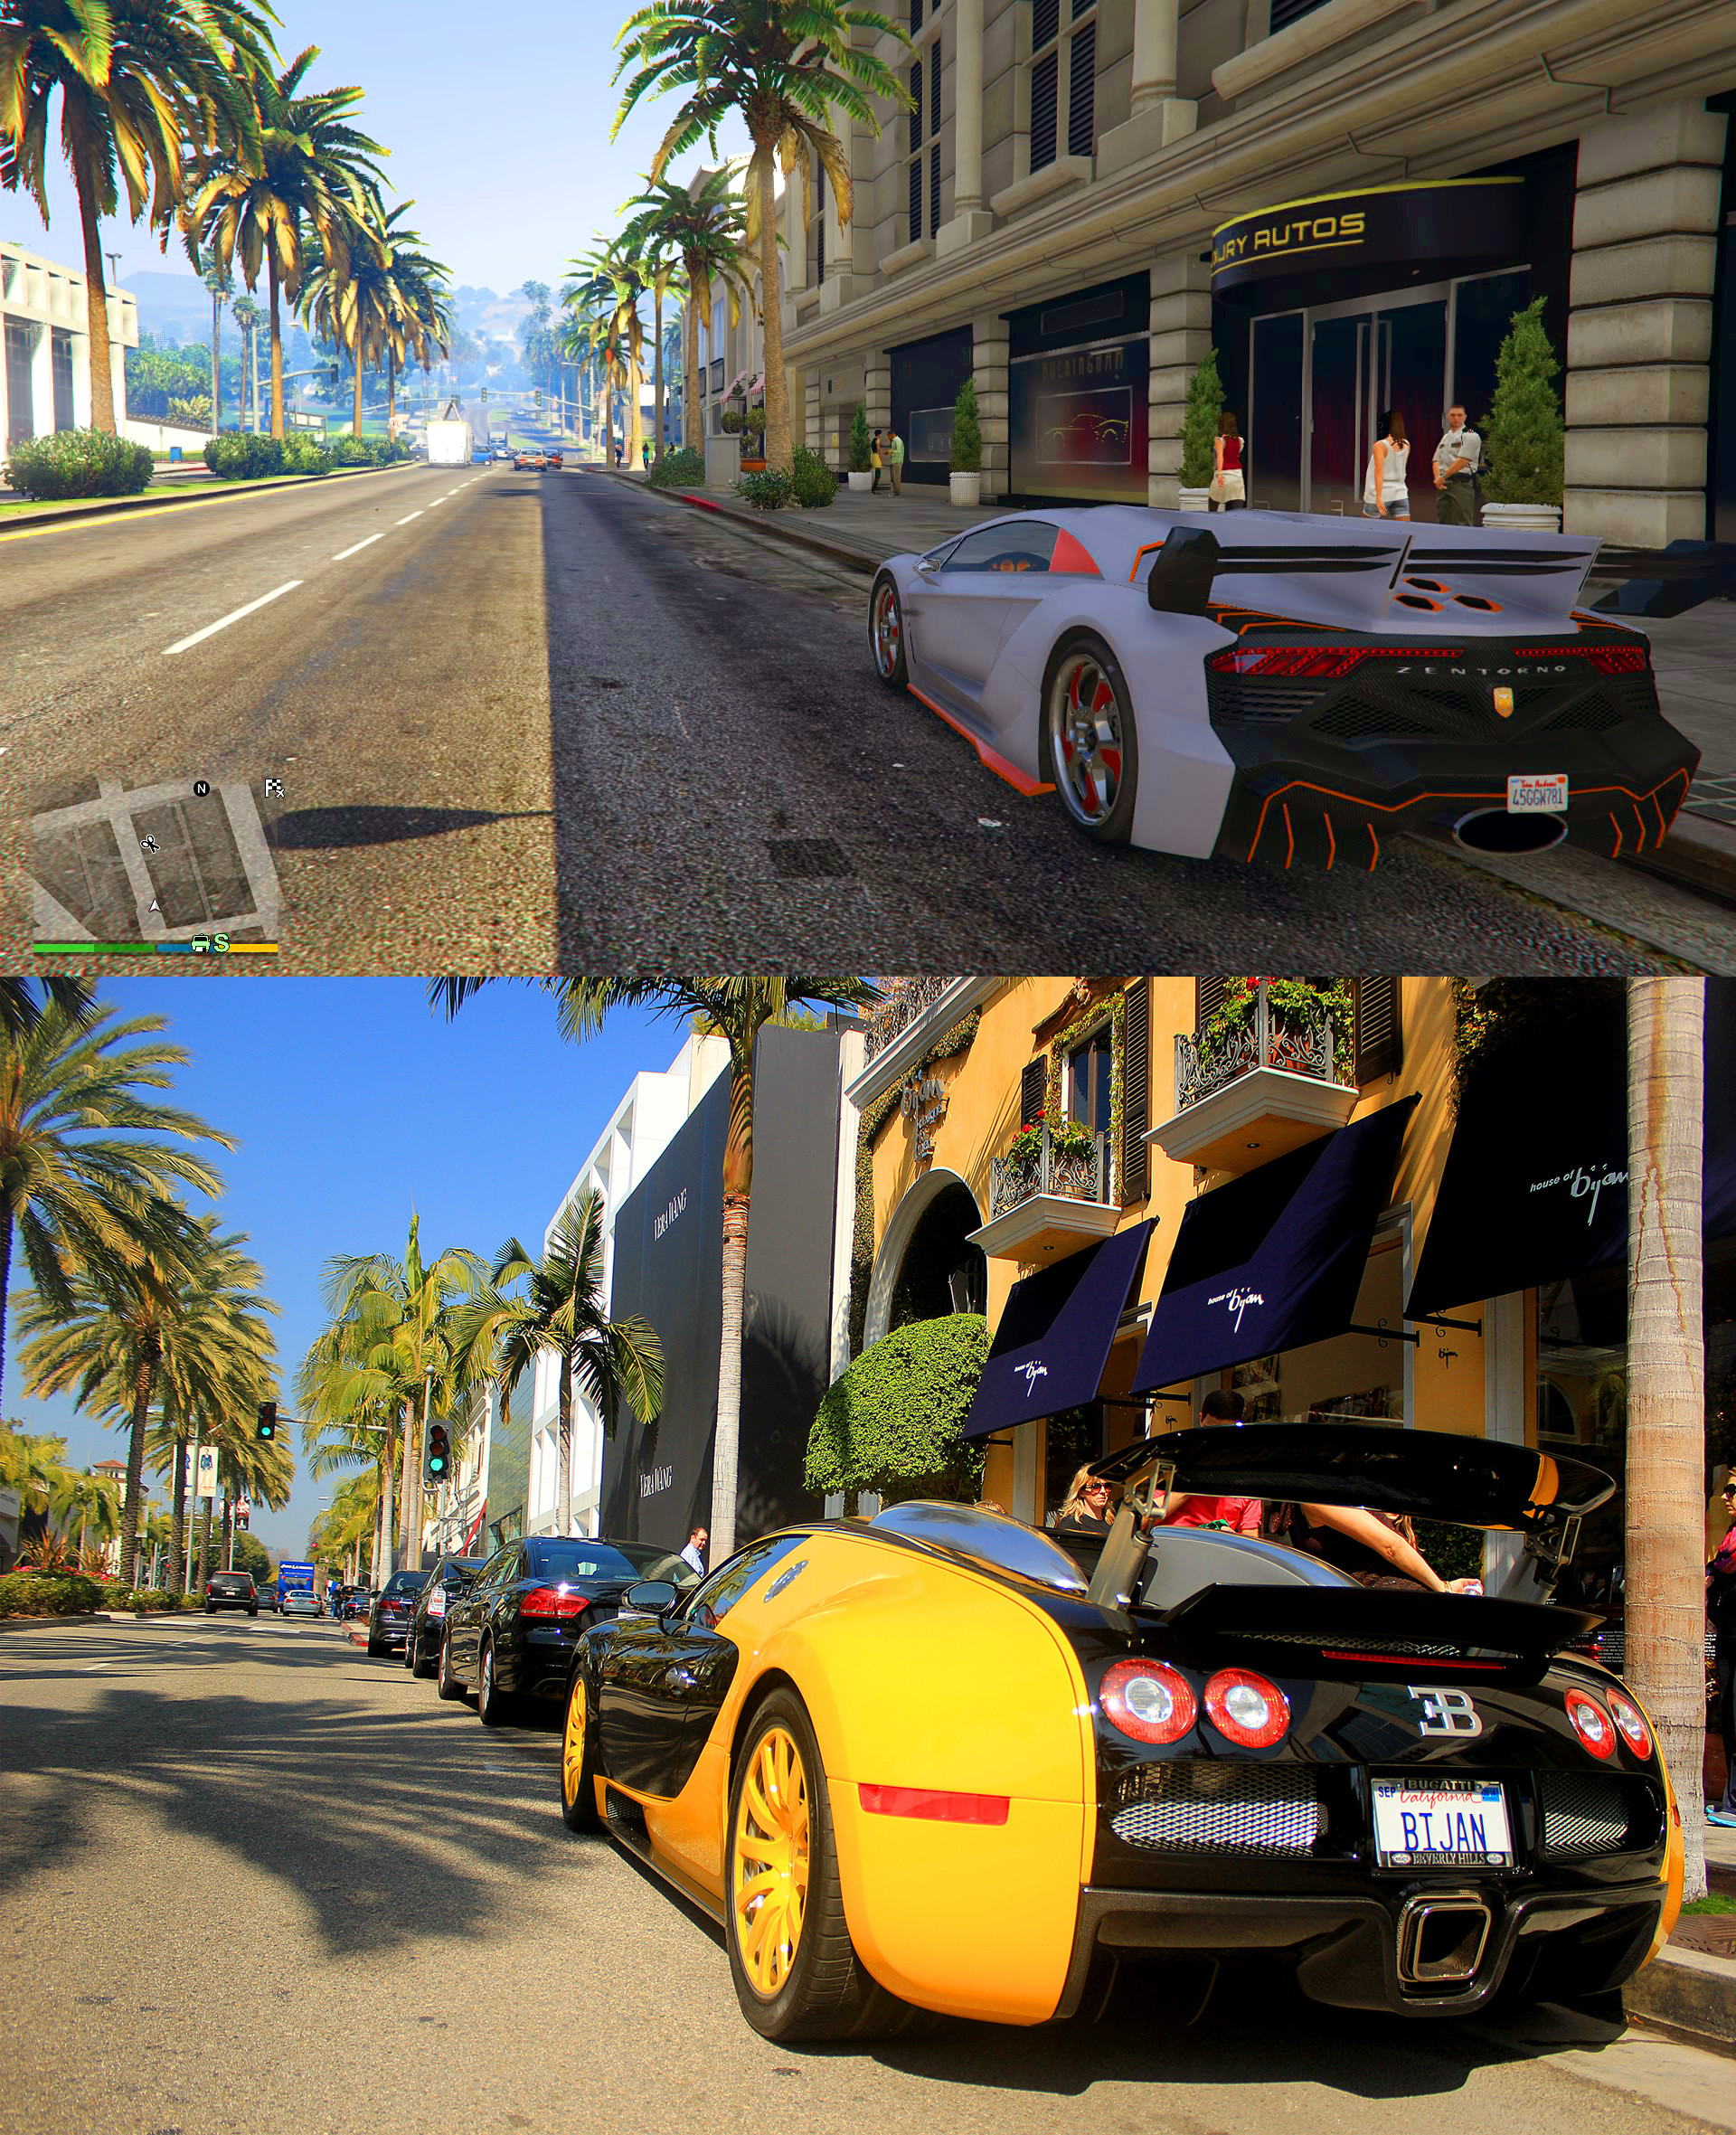 GTA V Los Santos vs Real Life Los Angeles Comparison ...